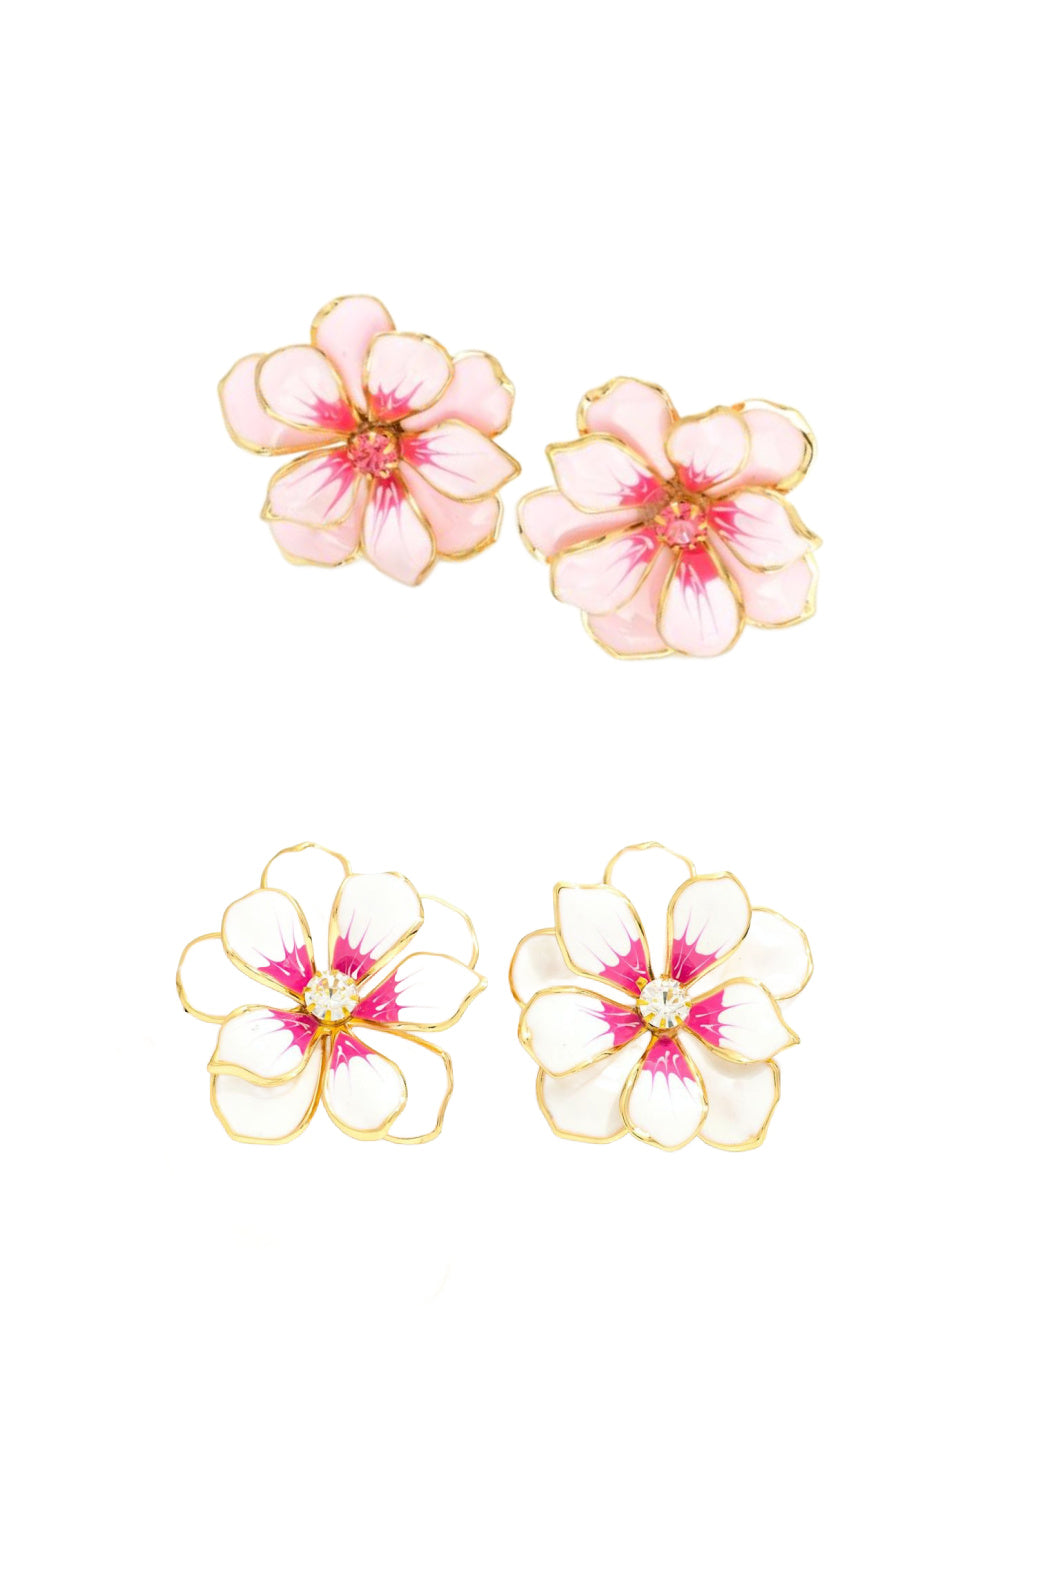 Painted Enamel Flower Earrings